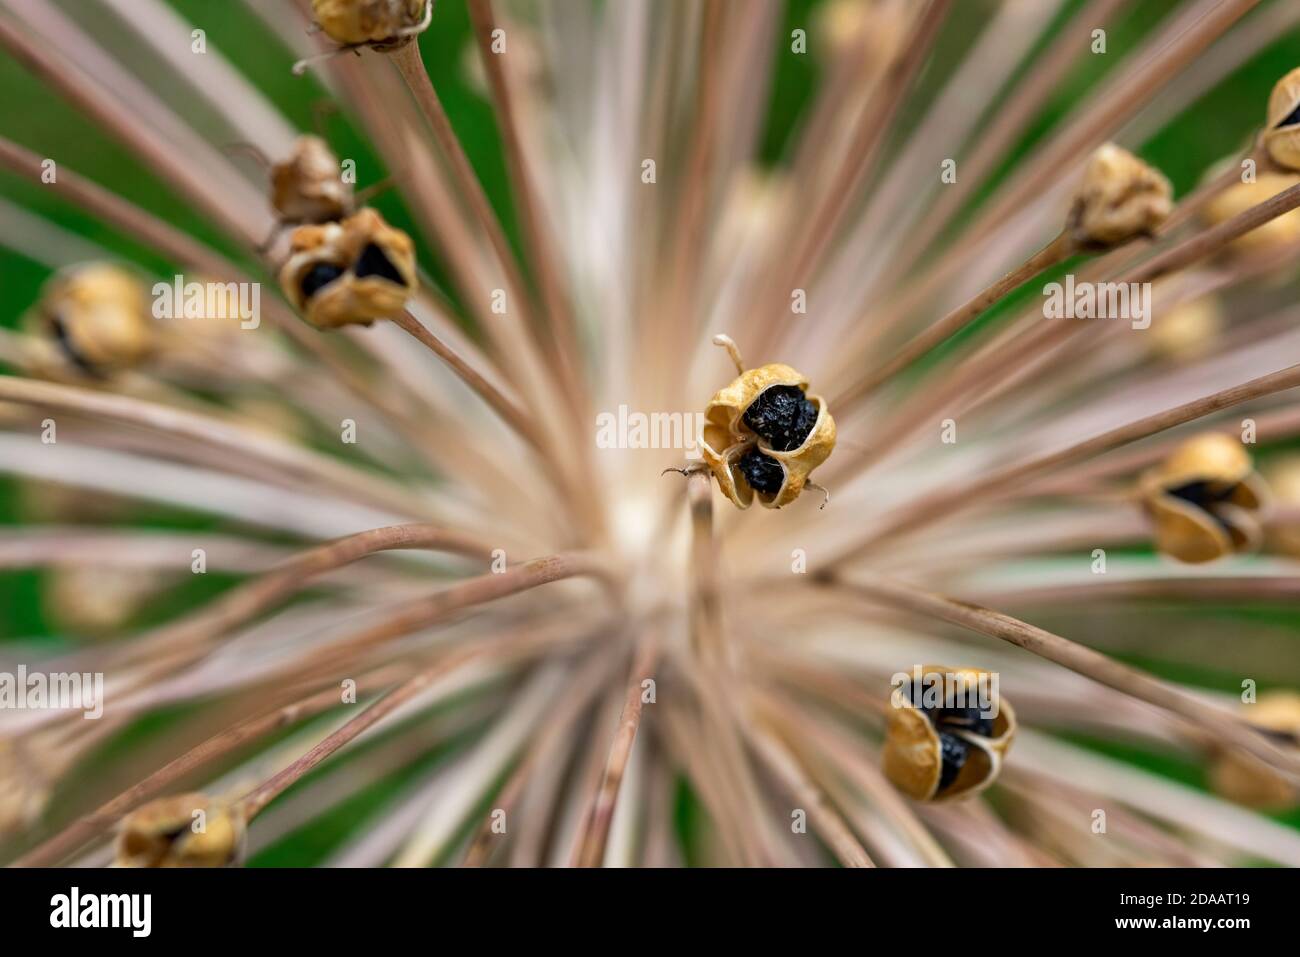 Dead Allium Blume Kopf Nahaufnahme Makro gegen ein Grün Gartenhintergrund Stockfoto